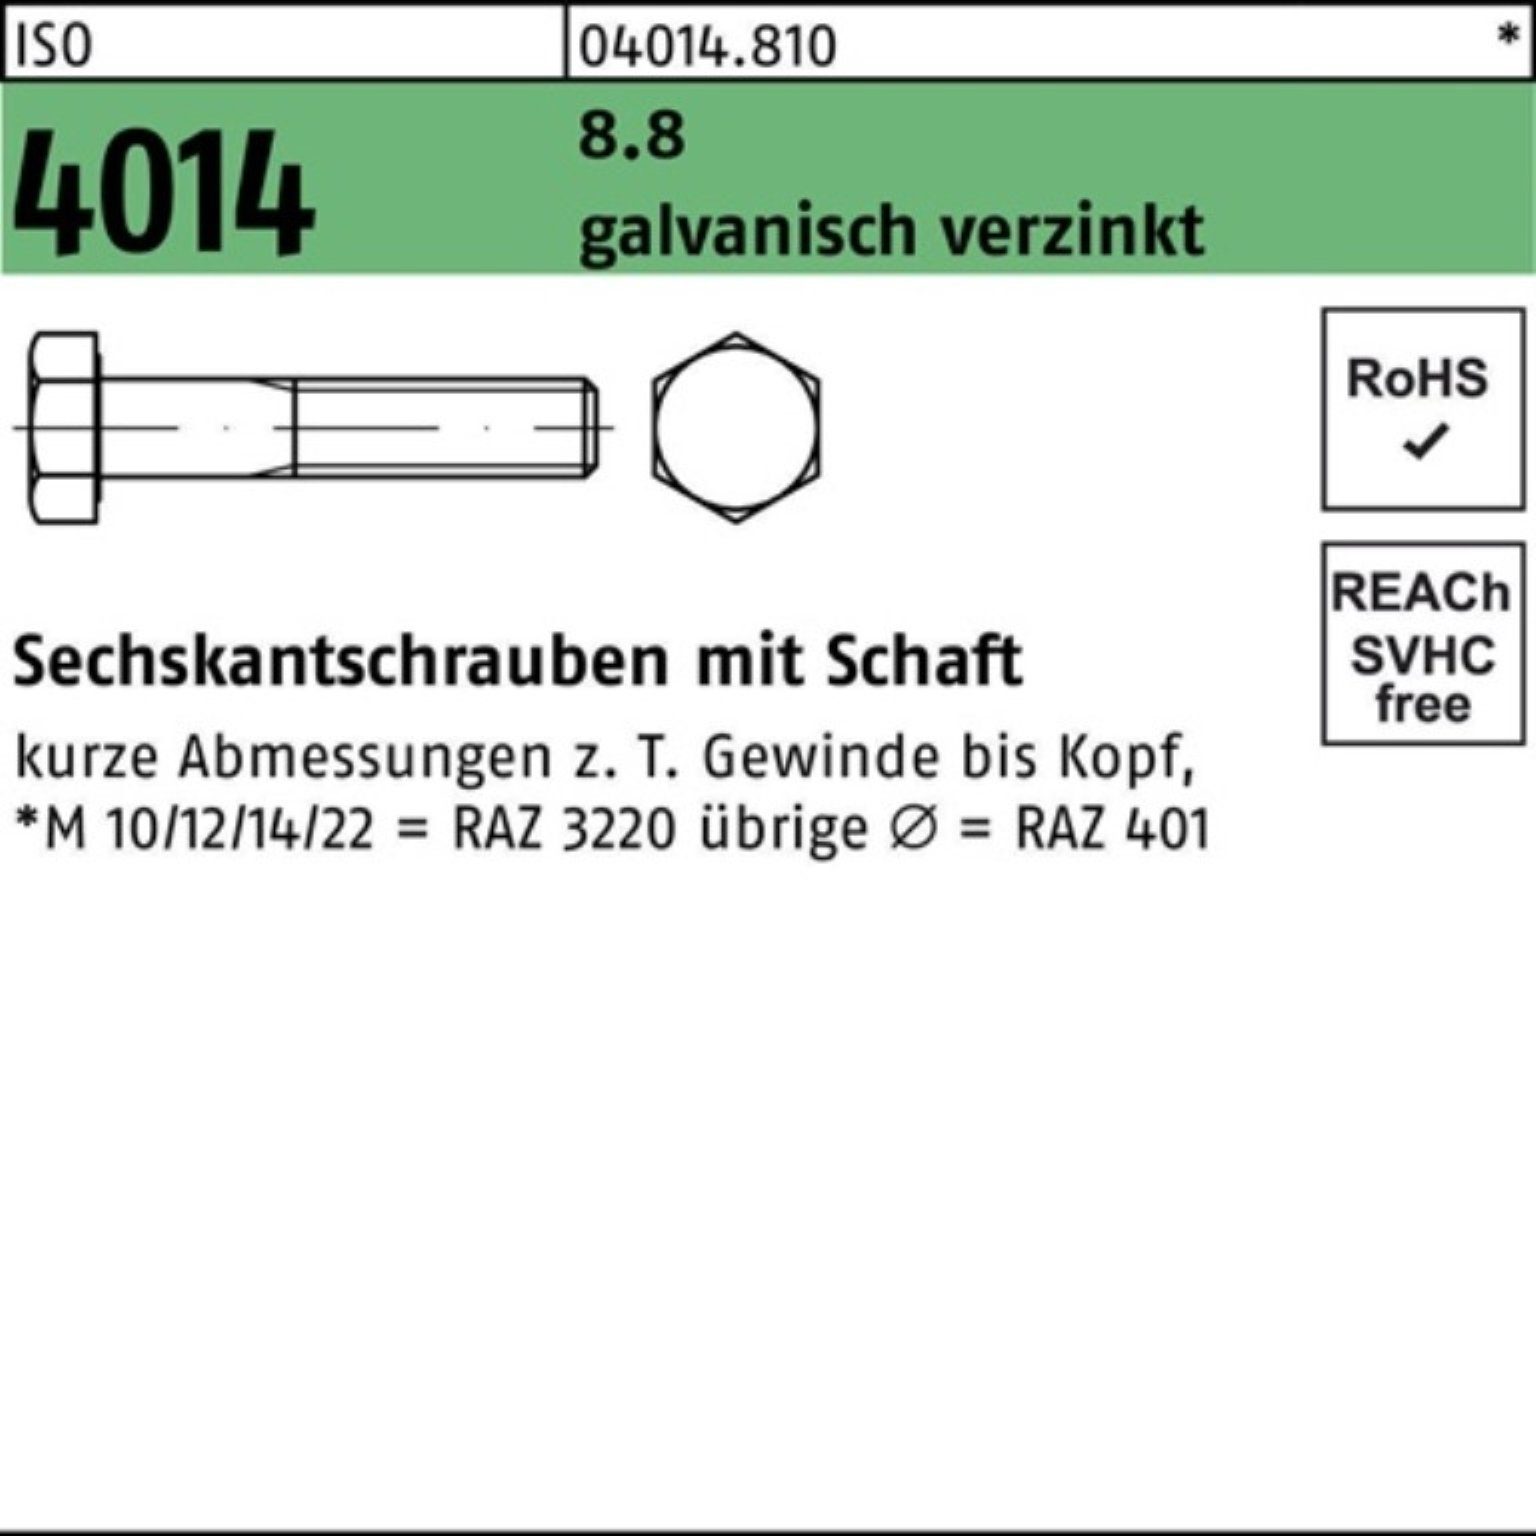 Bufab Sechskantschraube 100er Pack Sechskantschraube Schaft M22x 1 8.8 galv.verz. 4014 ISO 200